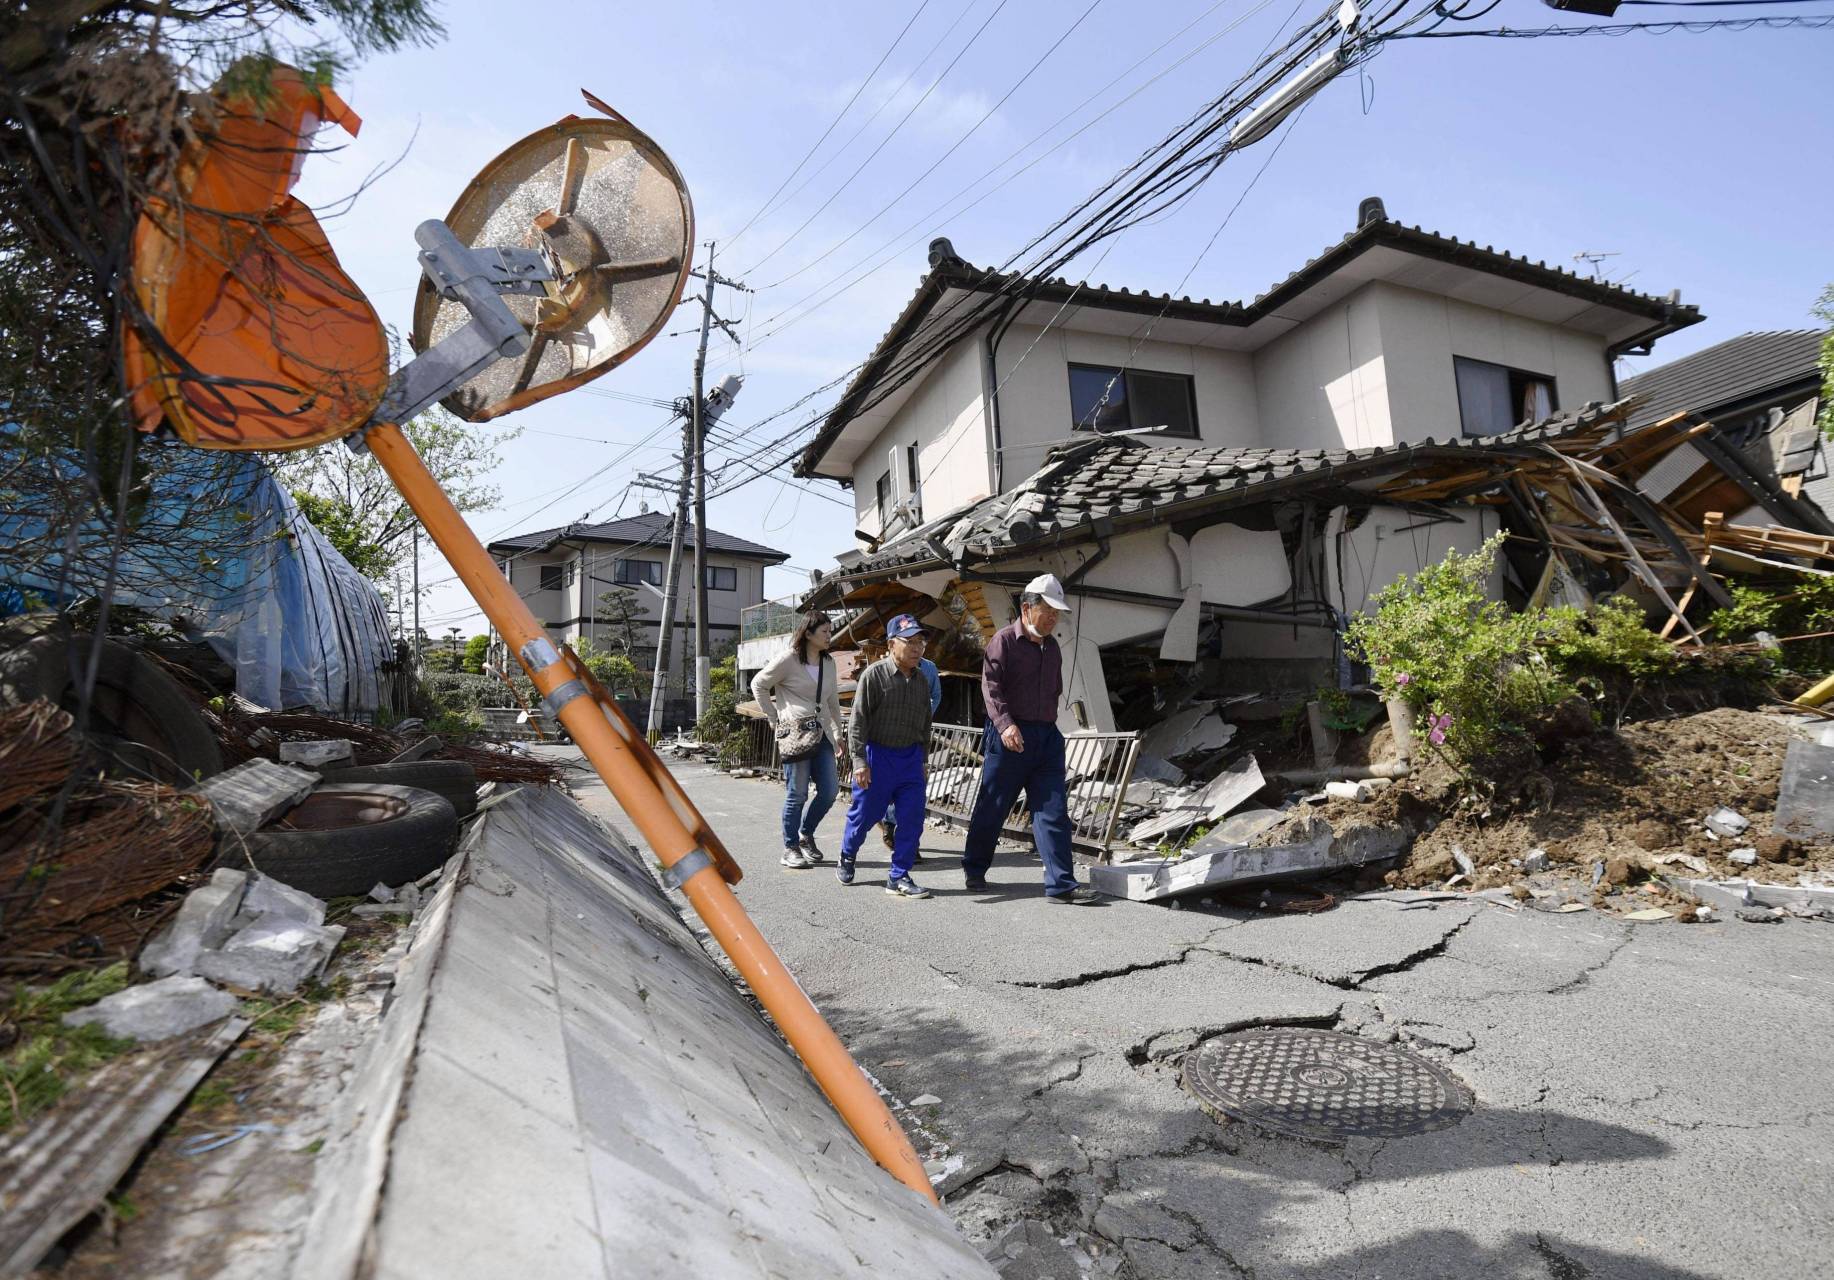 日本四天内出现六次地震,此时恰逢日本疯狂排放核污水,这样一来,相当